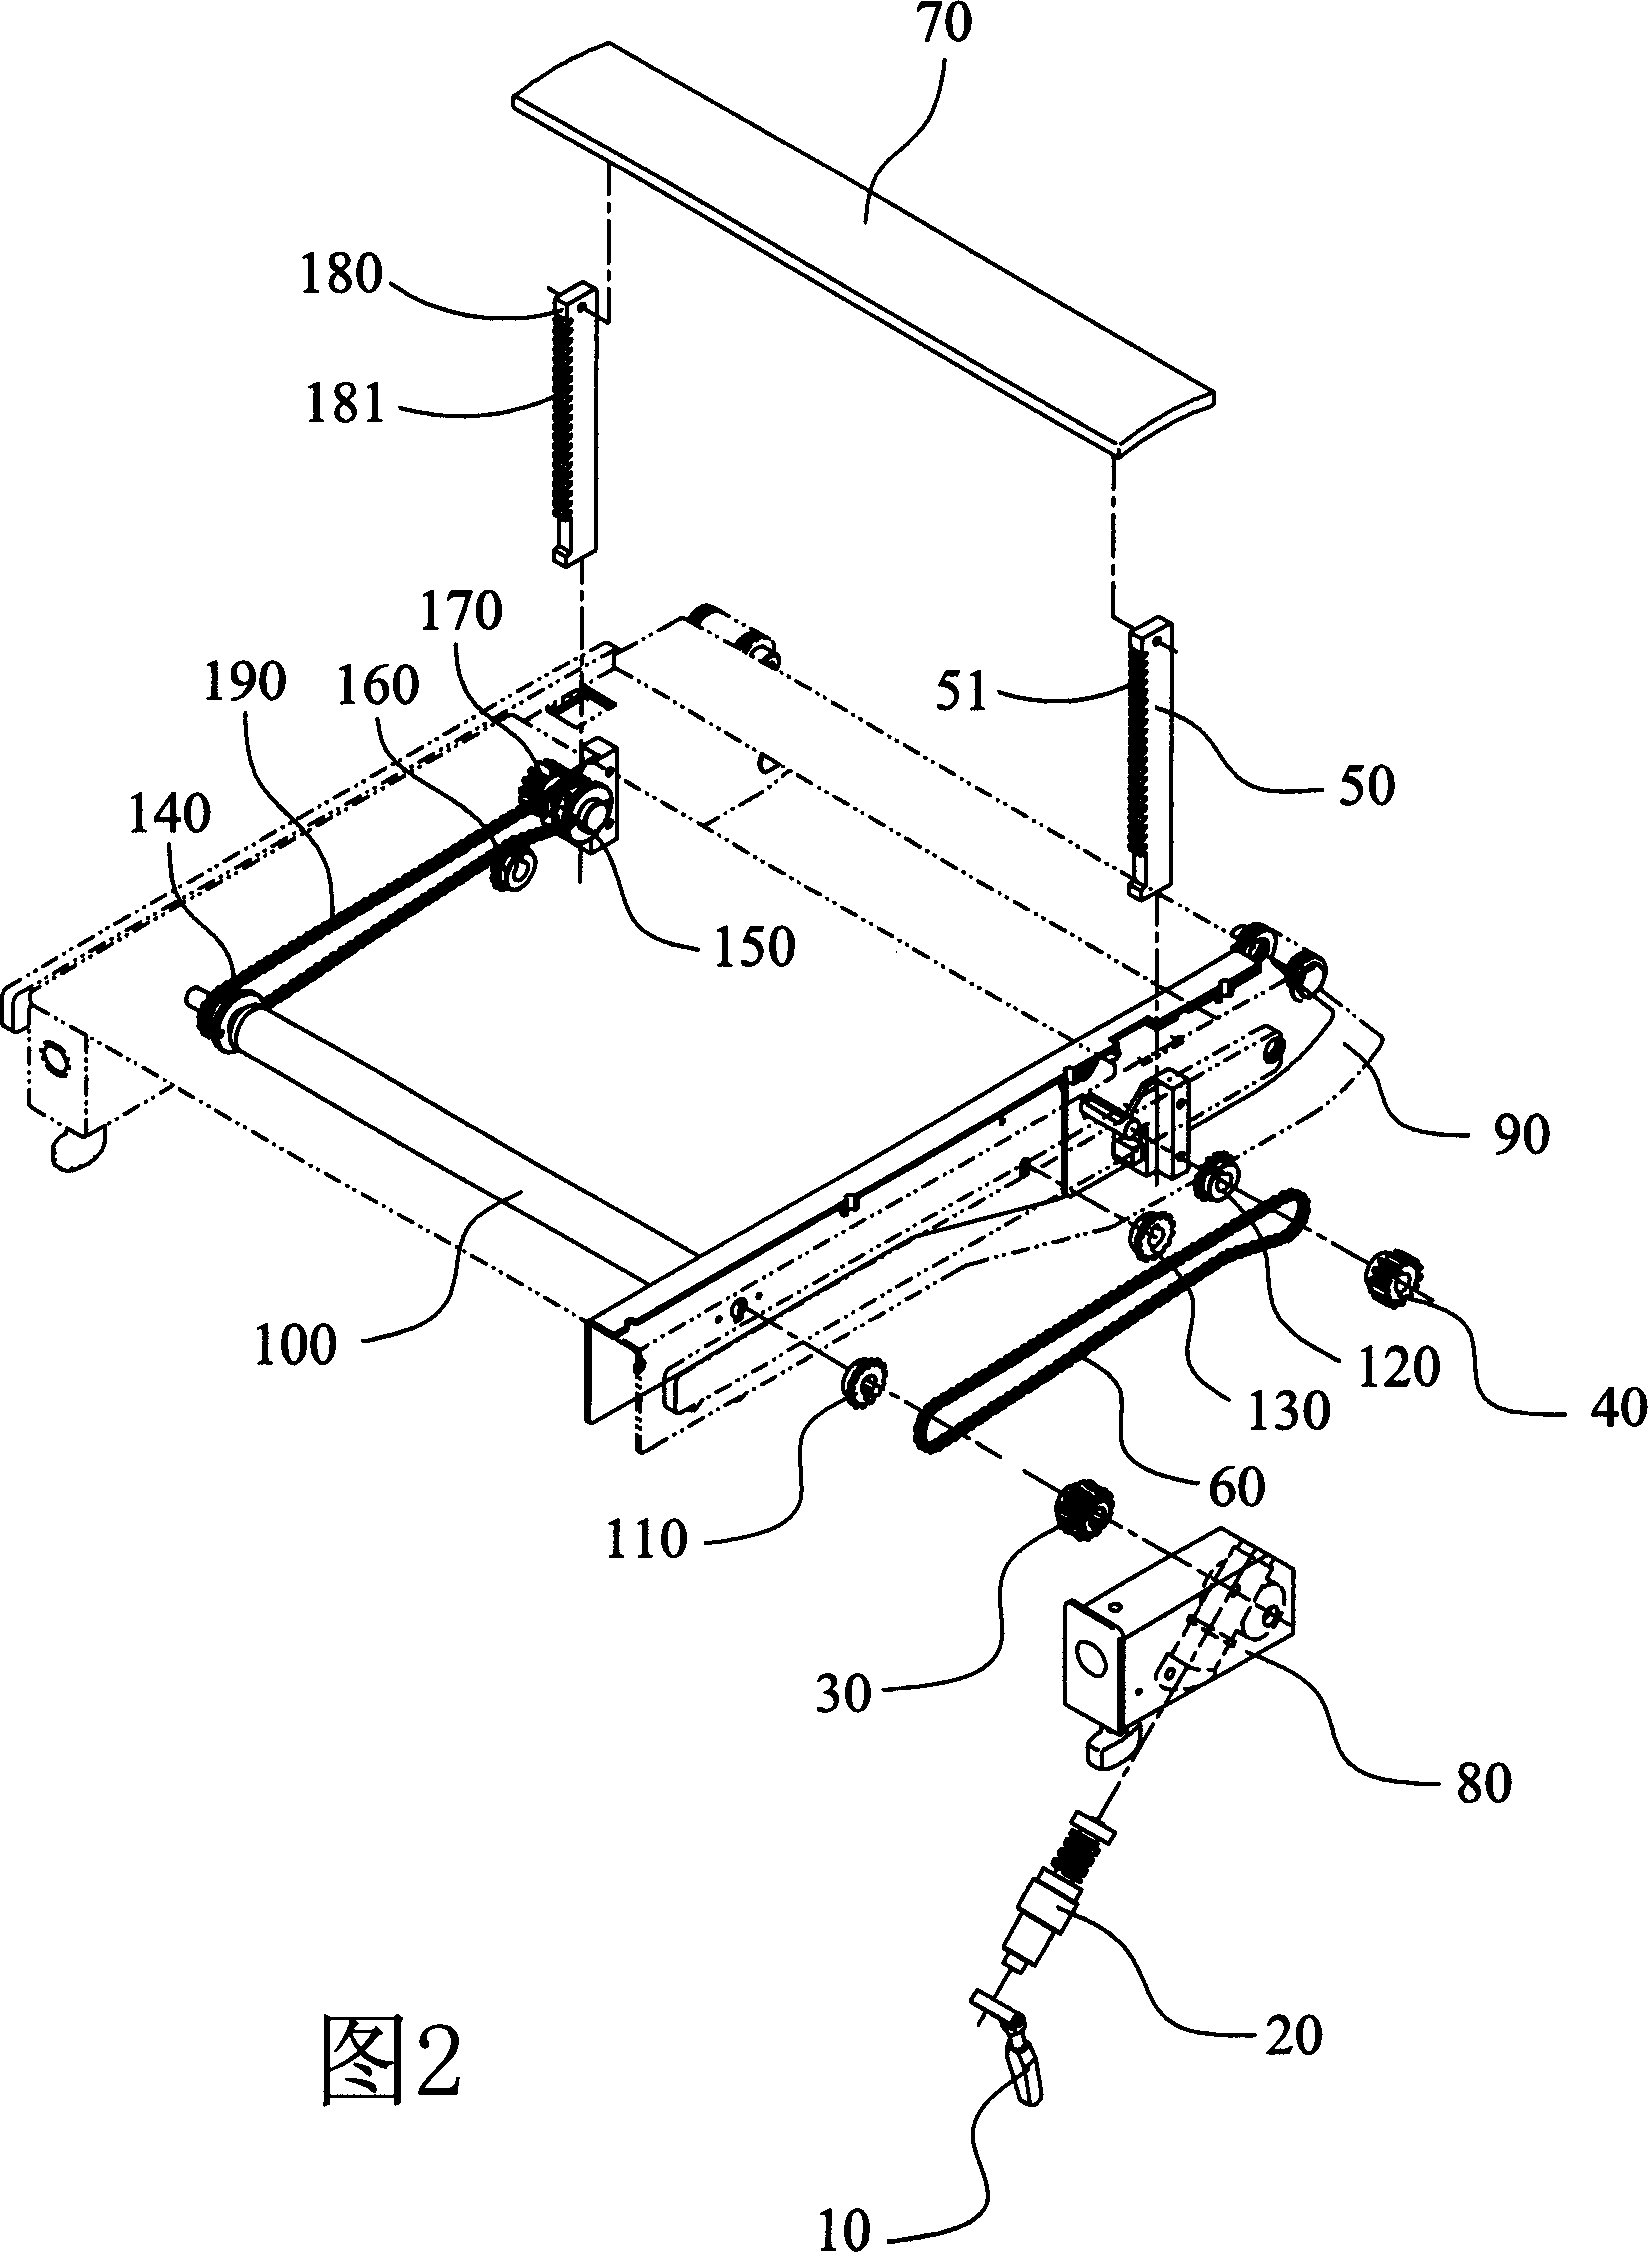 Waist ejector lifting mechanism